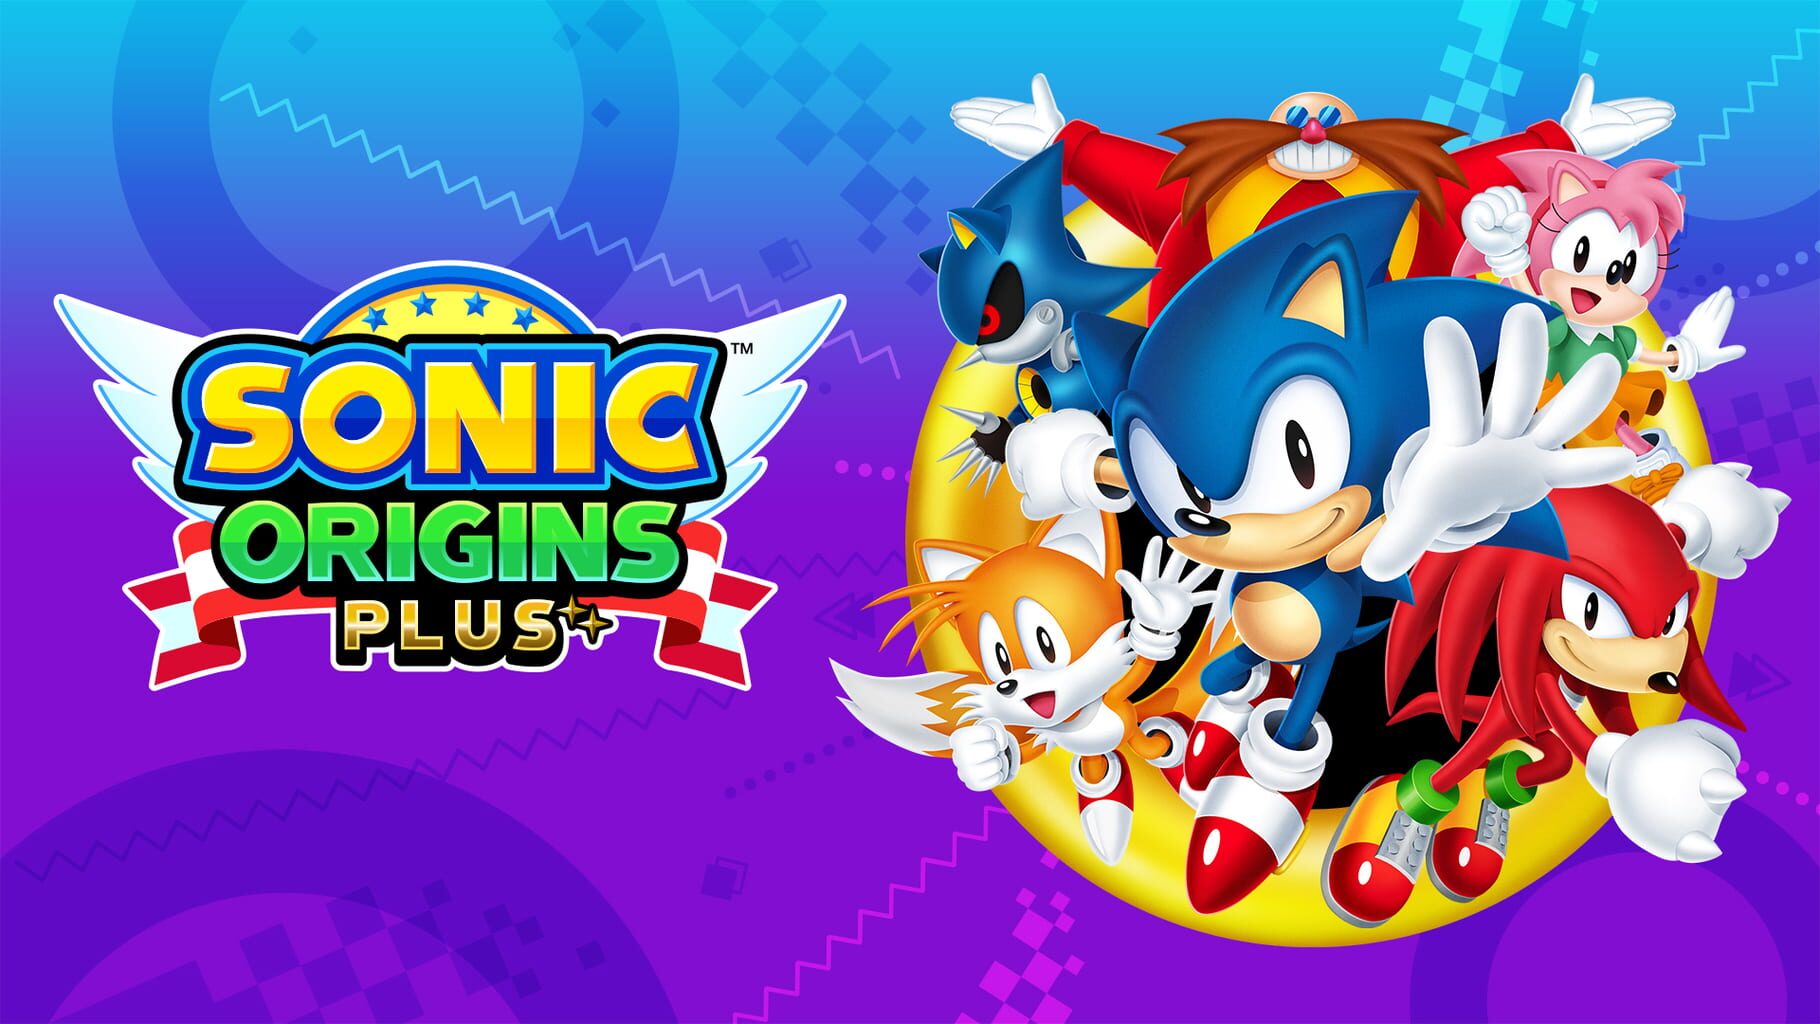 Arte - Sonic Origins Plus